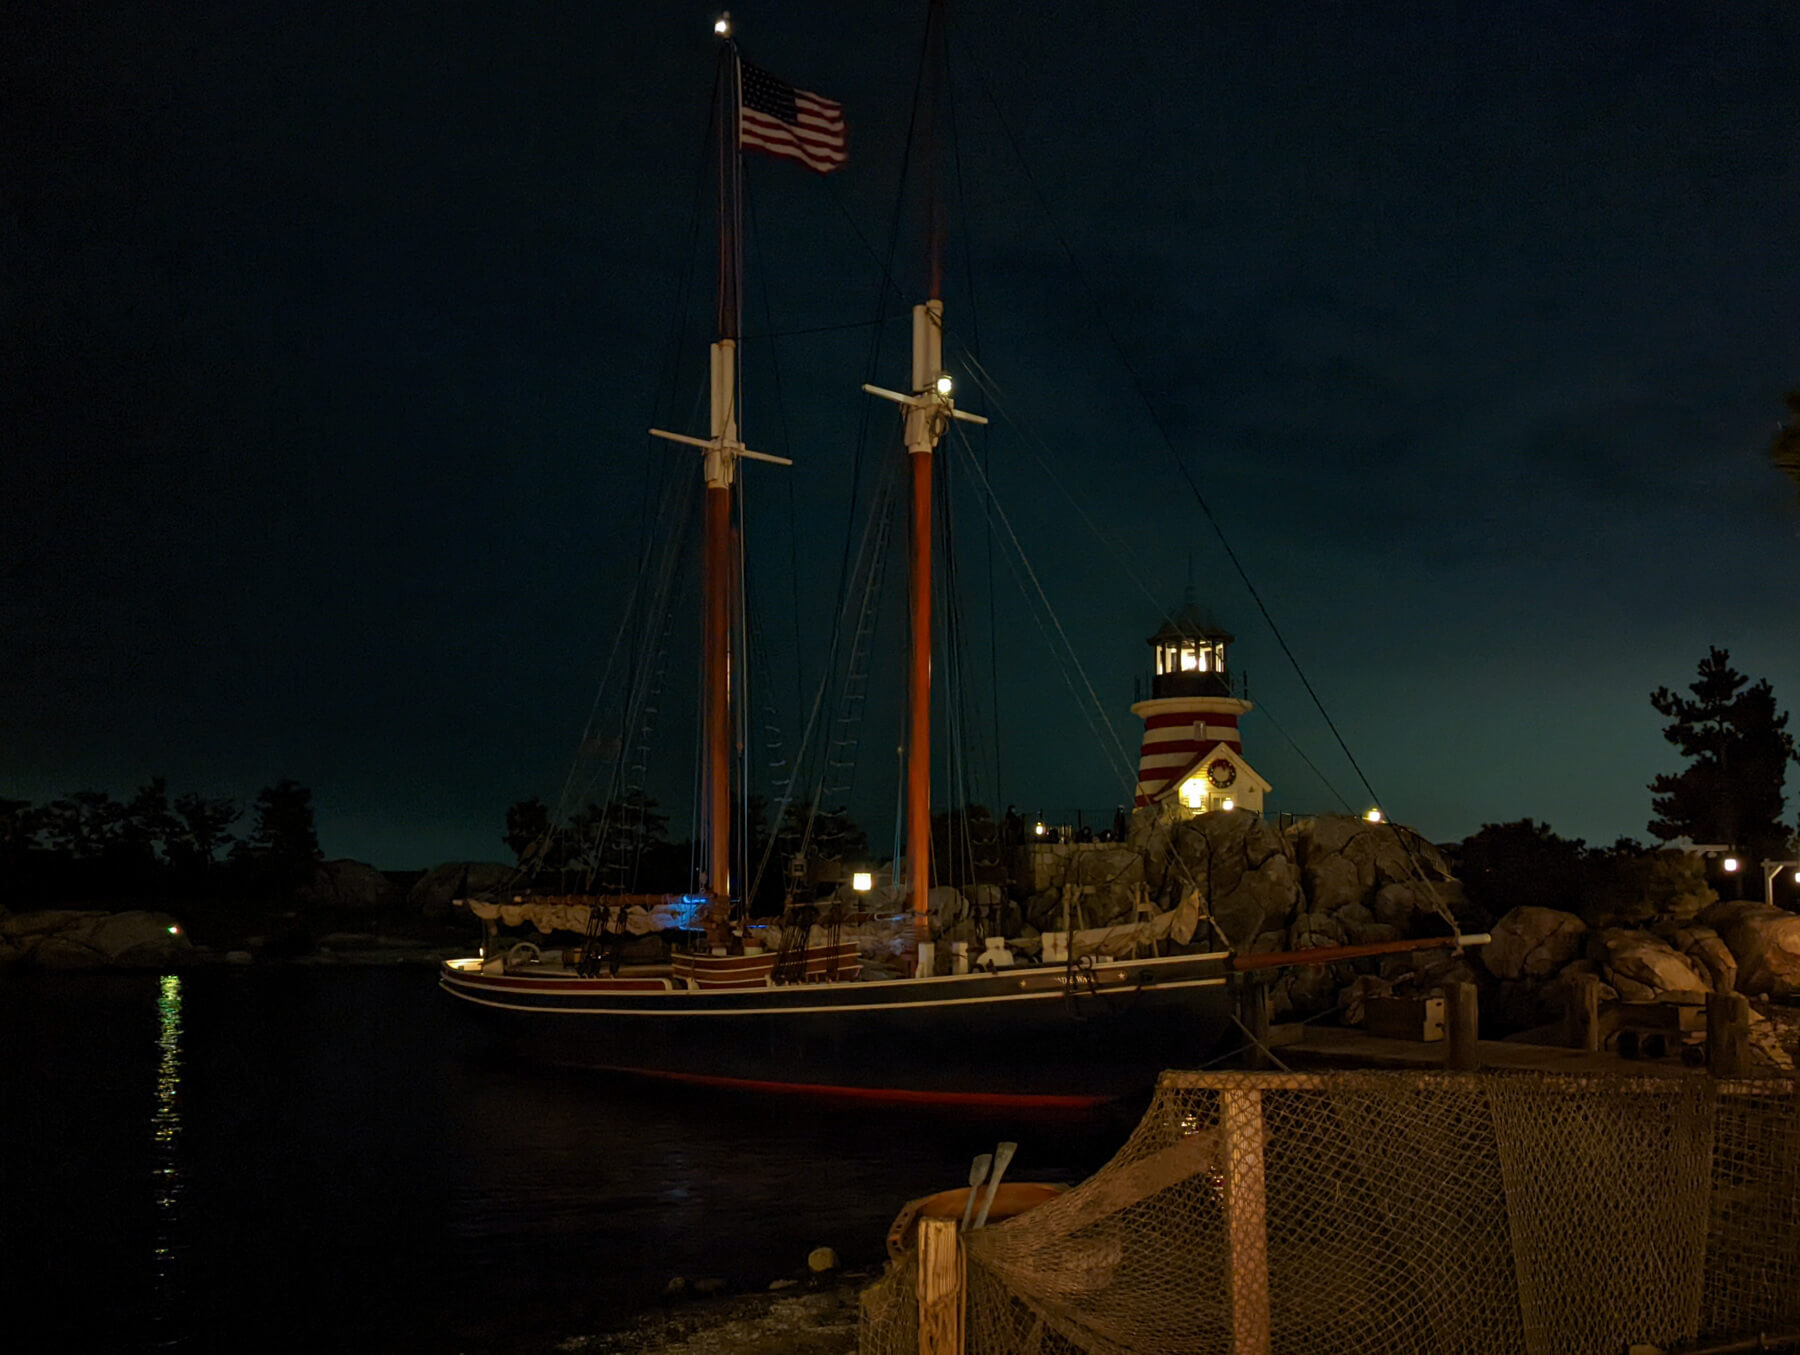 ケープコッドの船とハリケーンポイント・ハウス（灯台）